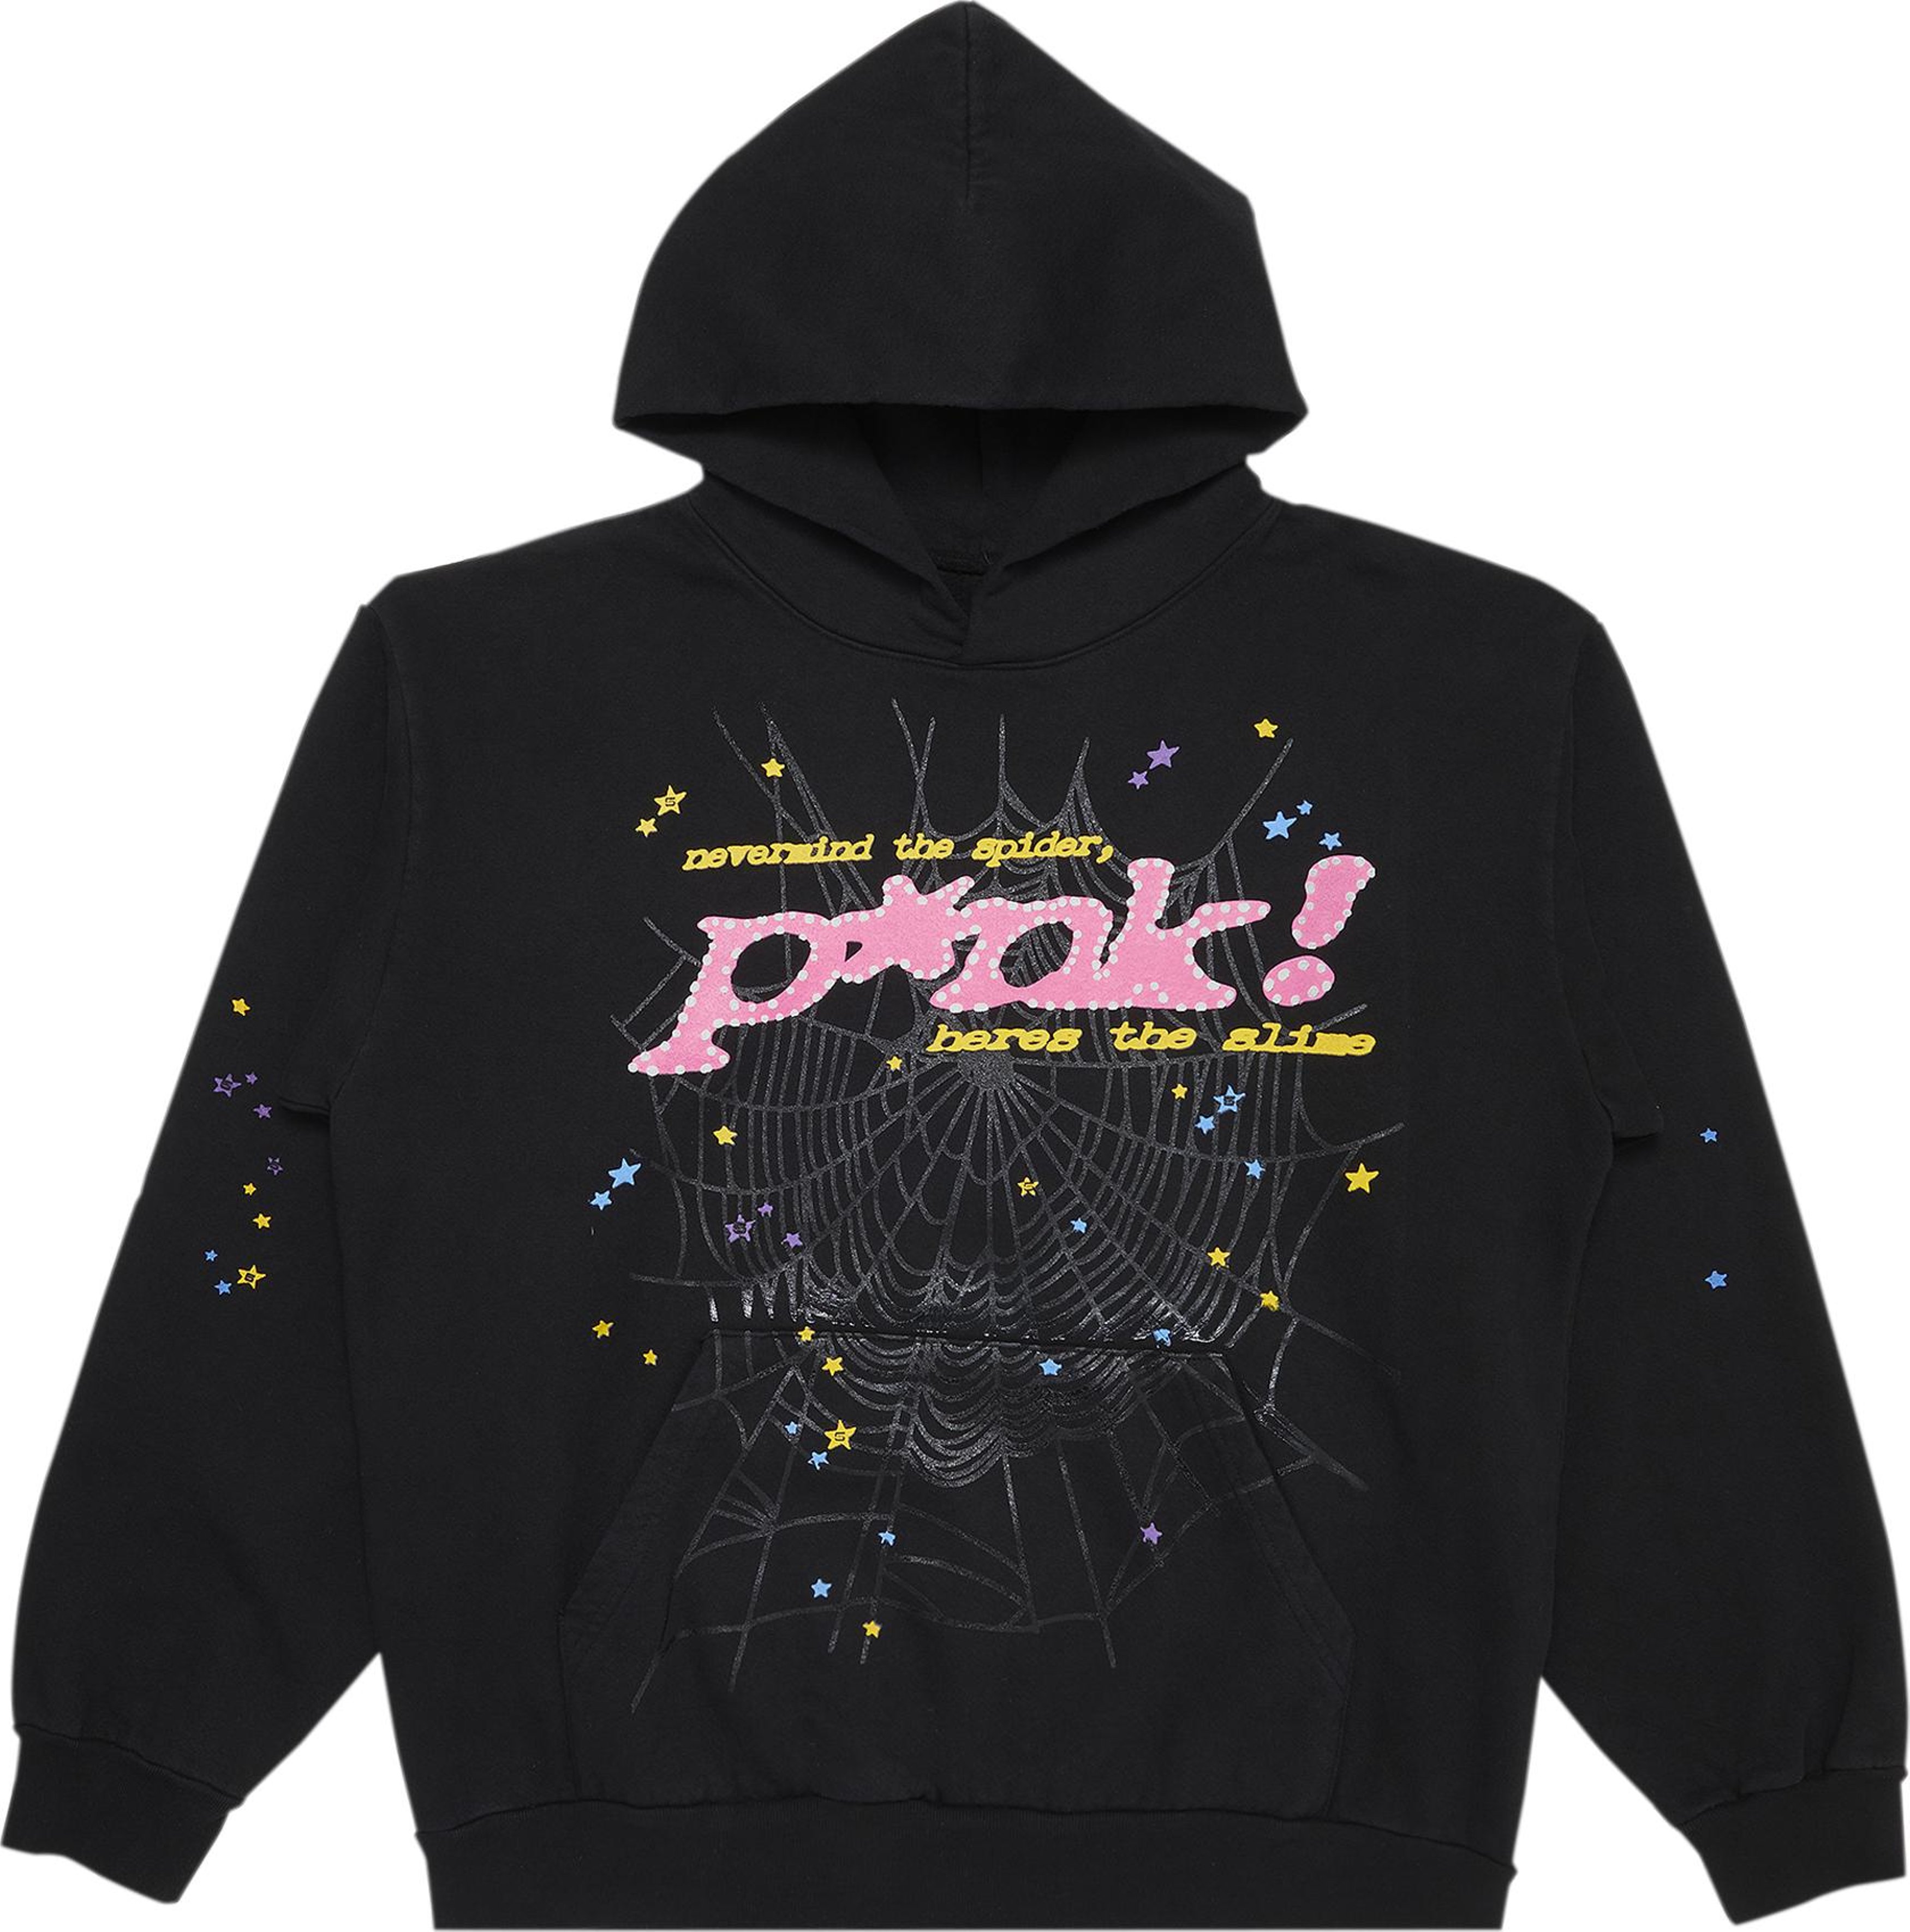 Buy Sp5der Logo Pullover Hoodie Sweatshirt 'Black Pink' - 2406 ...